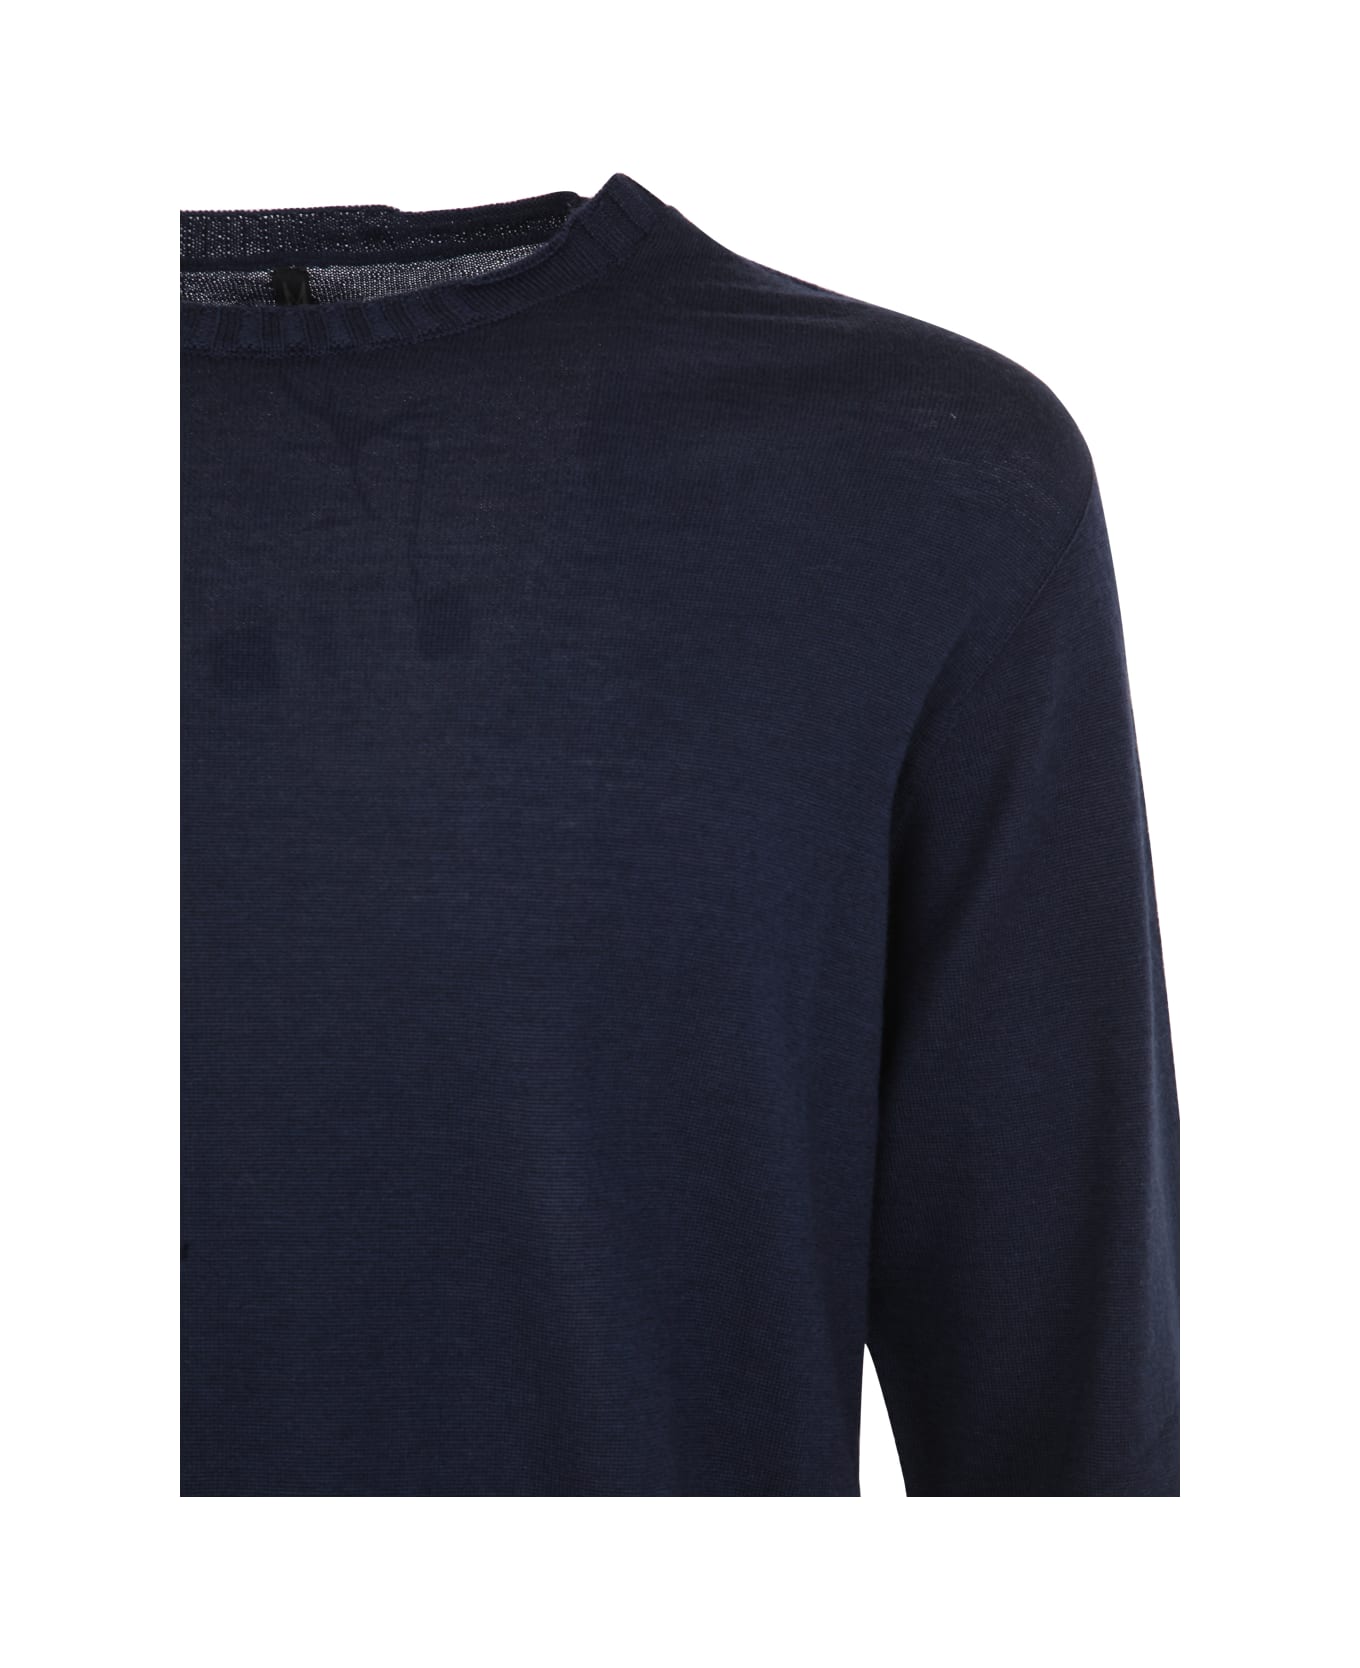 MD75 Wool Basic Crew Neck Sweater - Blue Basic